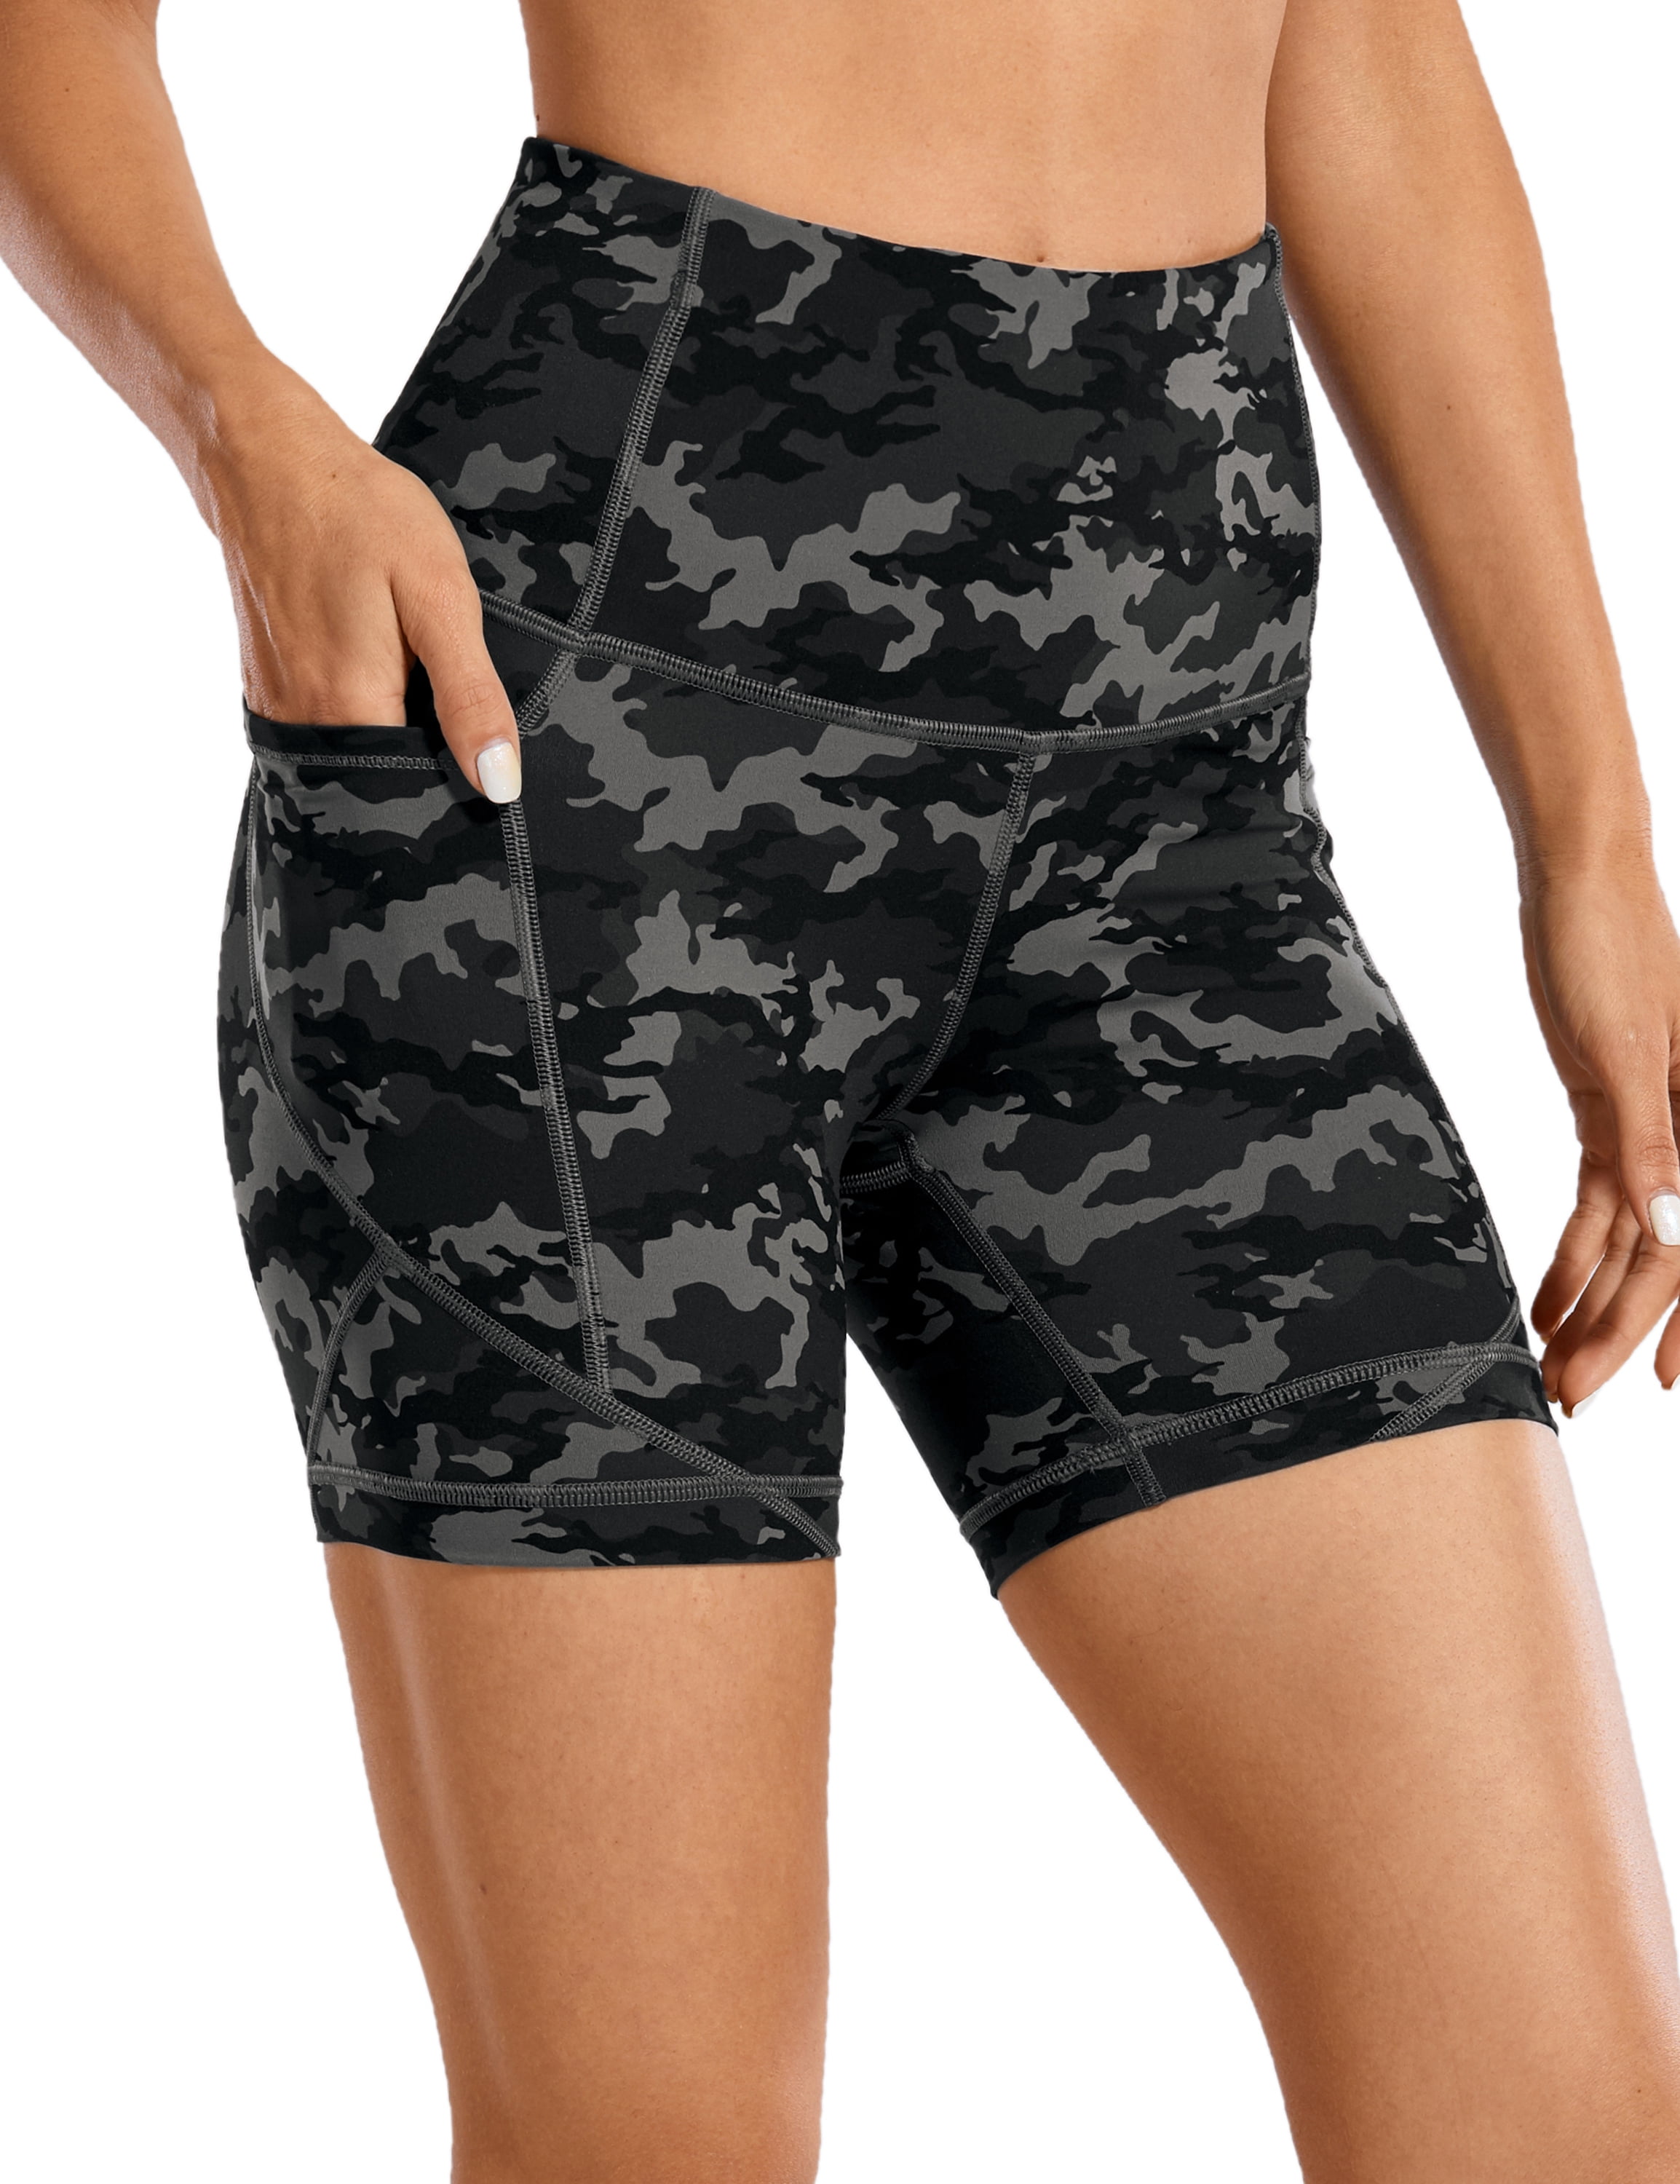 CRZ YOGA Women's Workout Yoga Shorts Tummy Control Naked Feeling Soft Athletic Biker Shorts 10 Inches